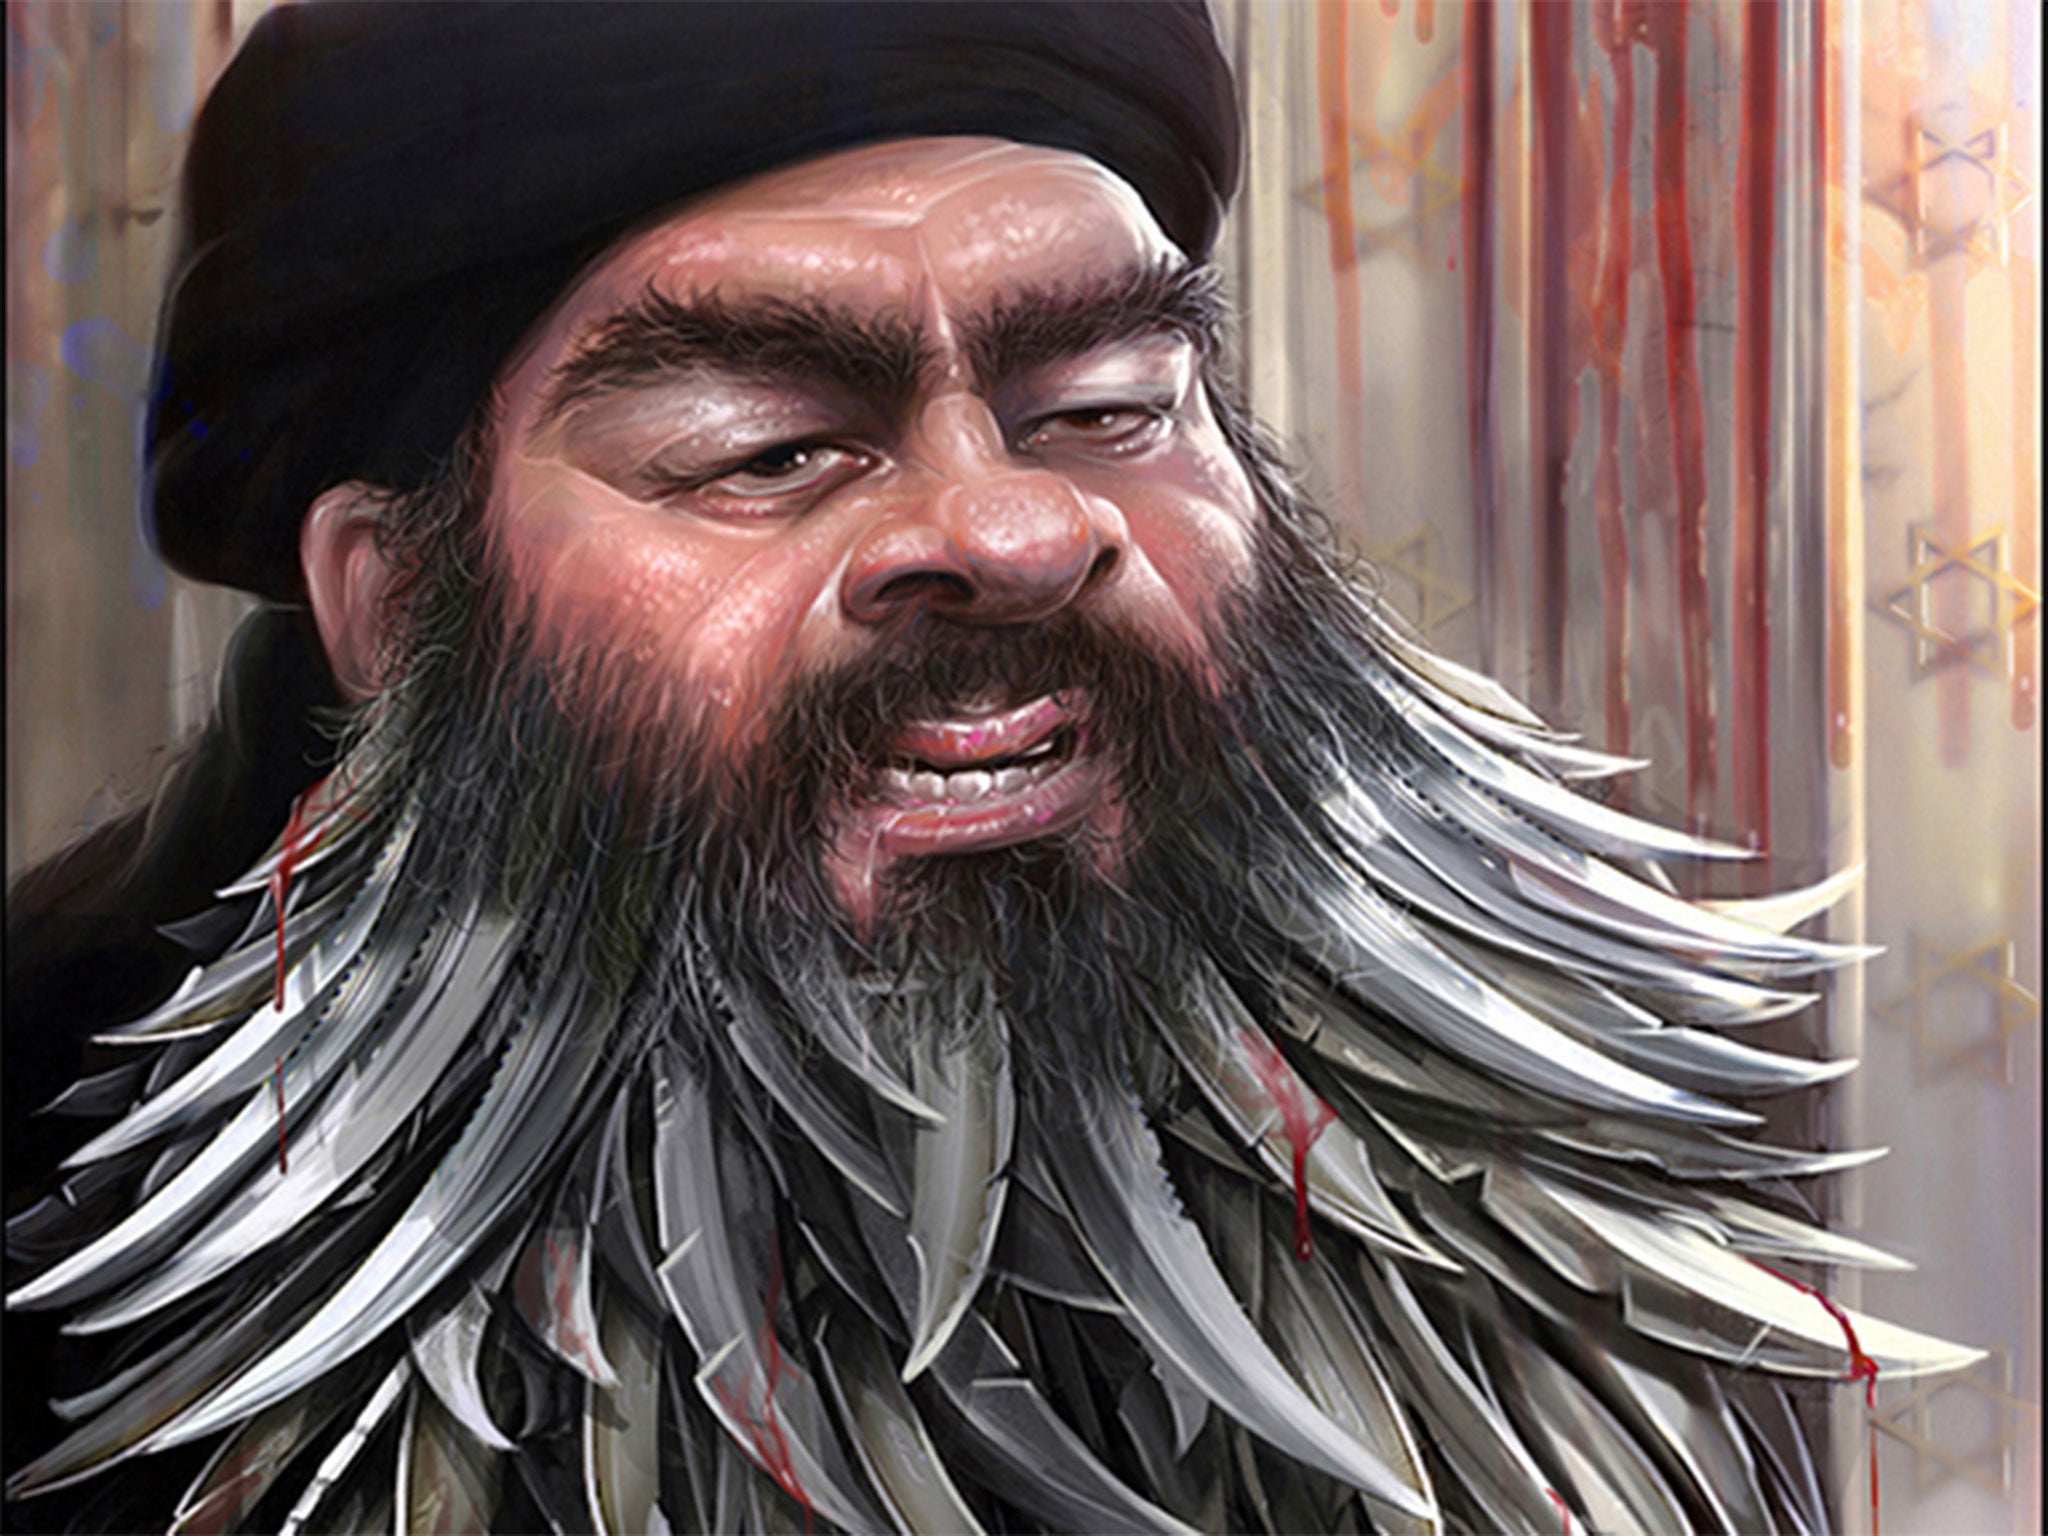 A caricature of Isis leader Abu Bakr al-Baghdadi, which is being displayed in Tehran